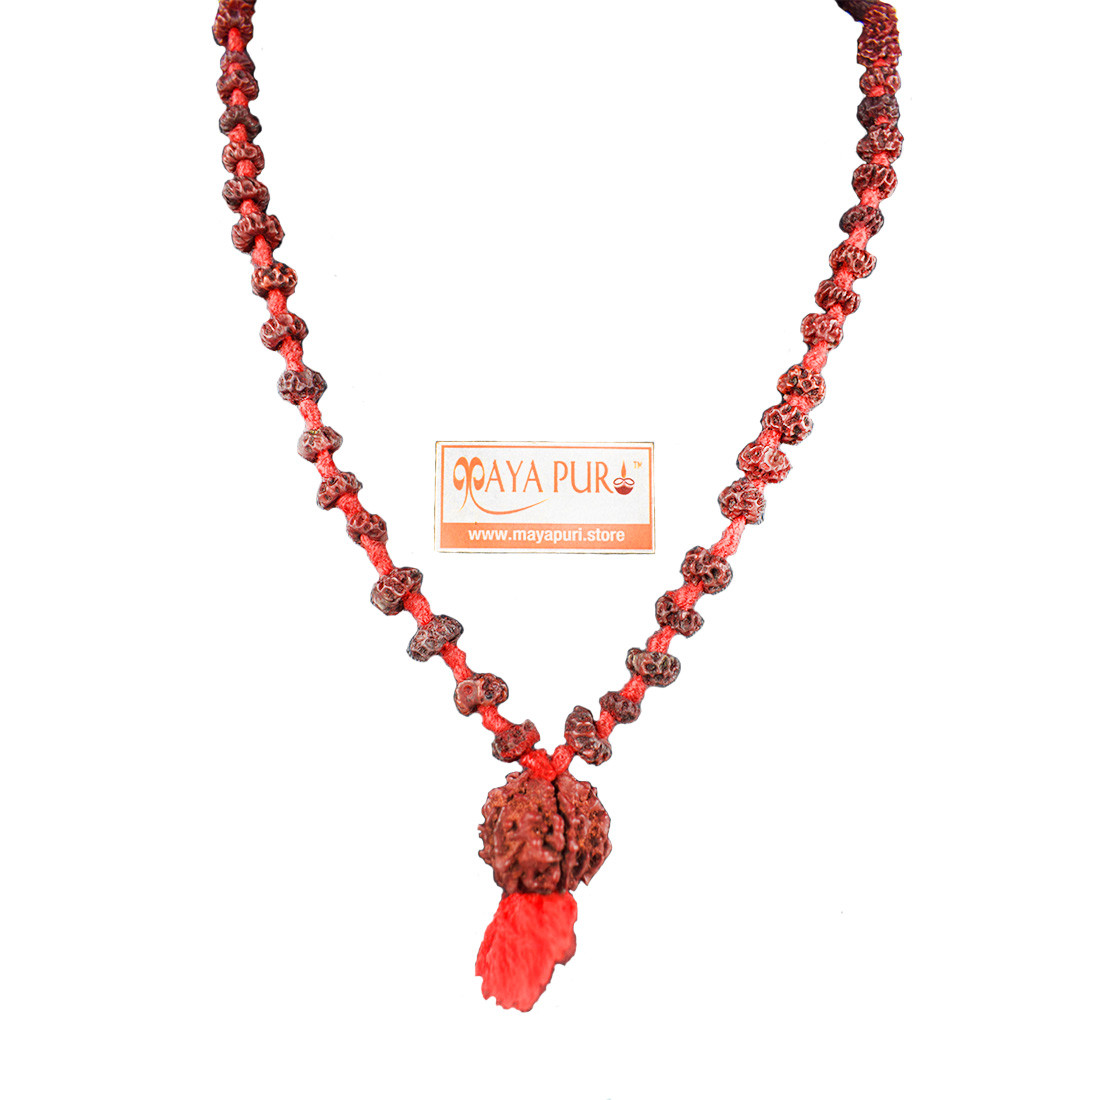 Small Beads Natural Rudraksha Mala for Neck, Men & Women (Pack of 1)